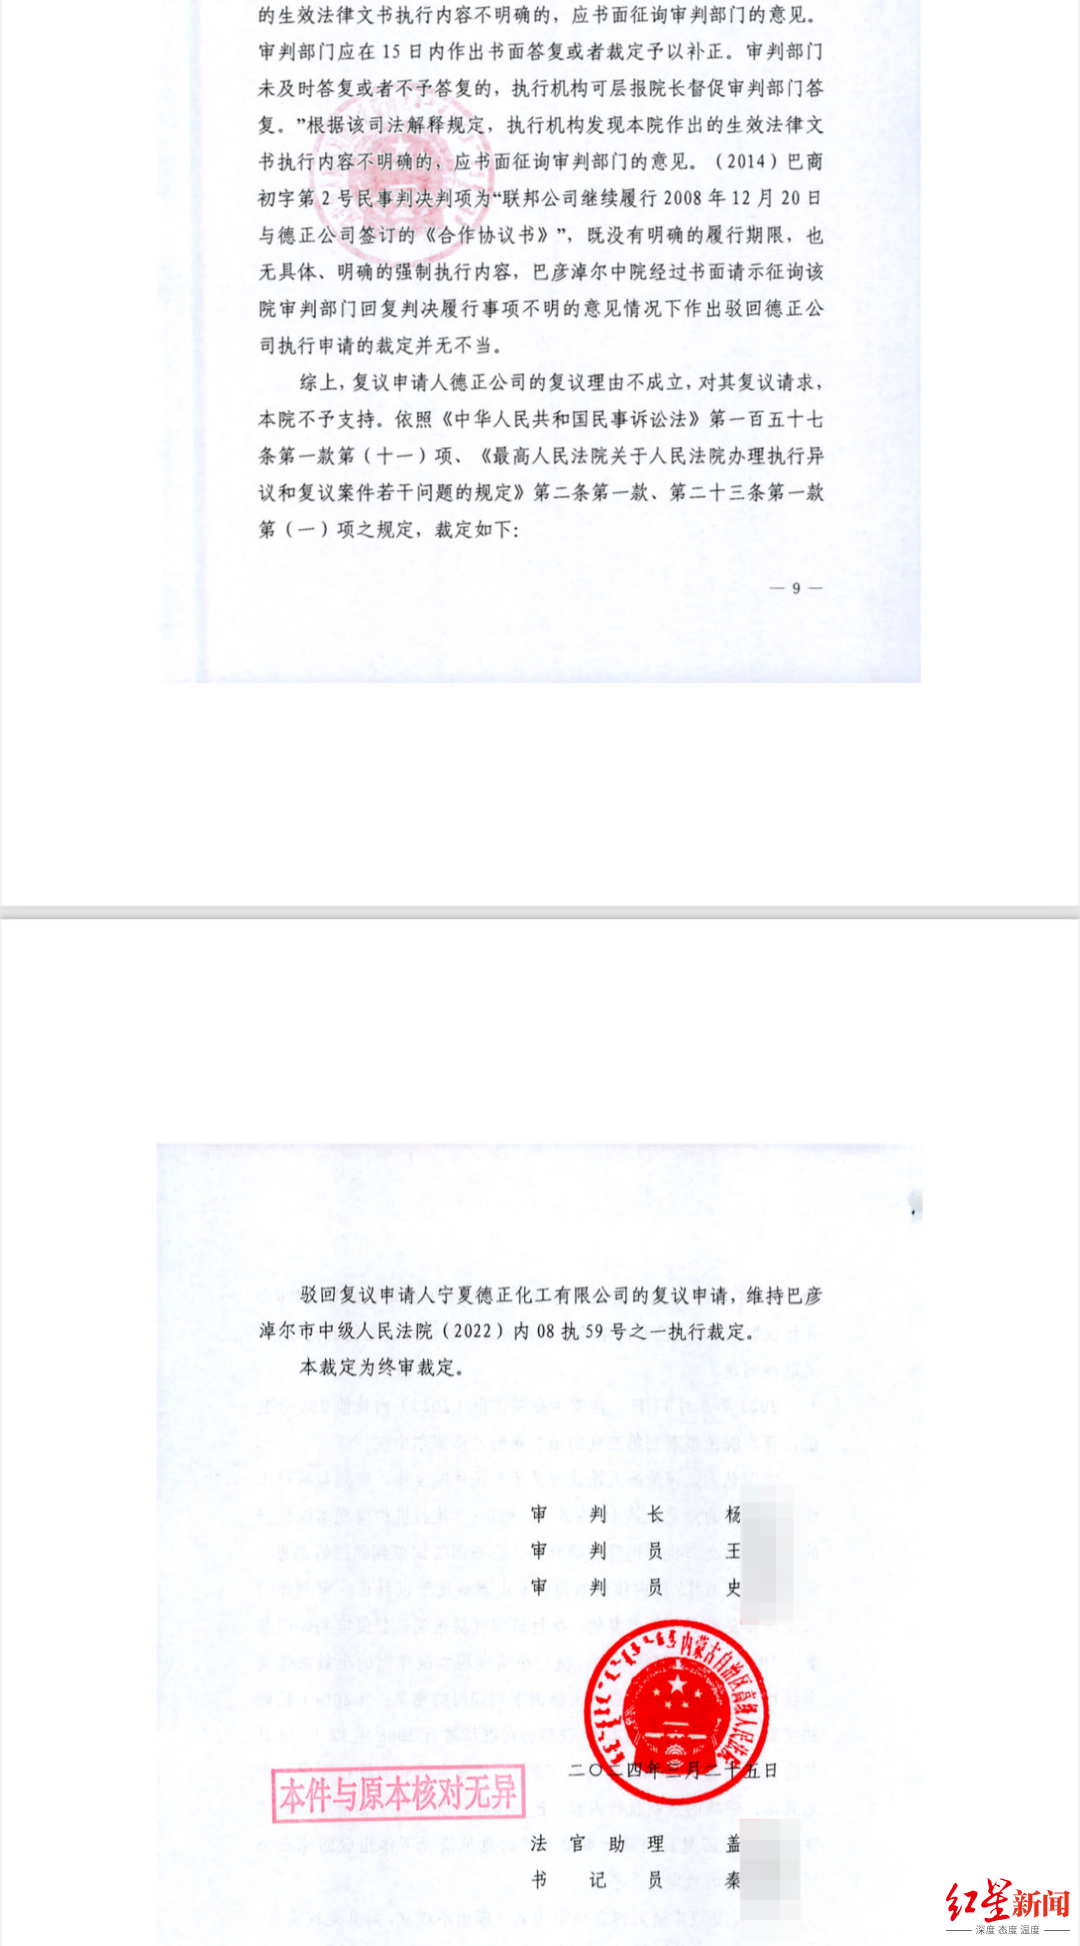 ▲内蒙古高院驳回德正化工的复议申请